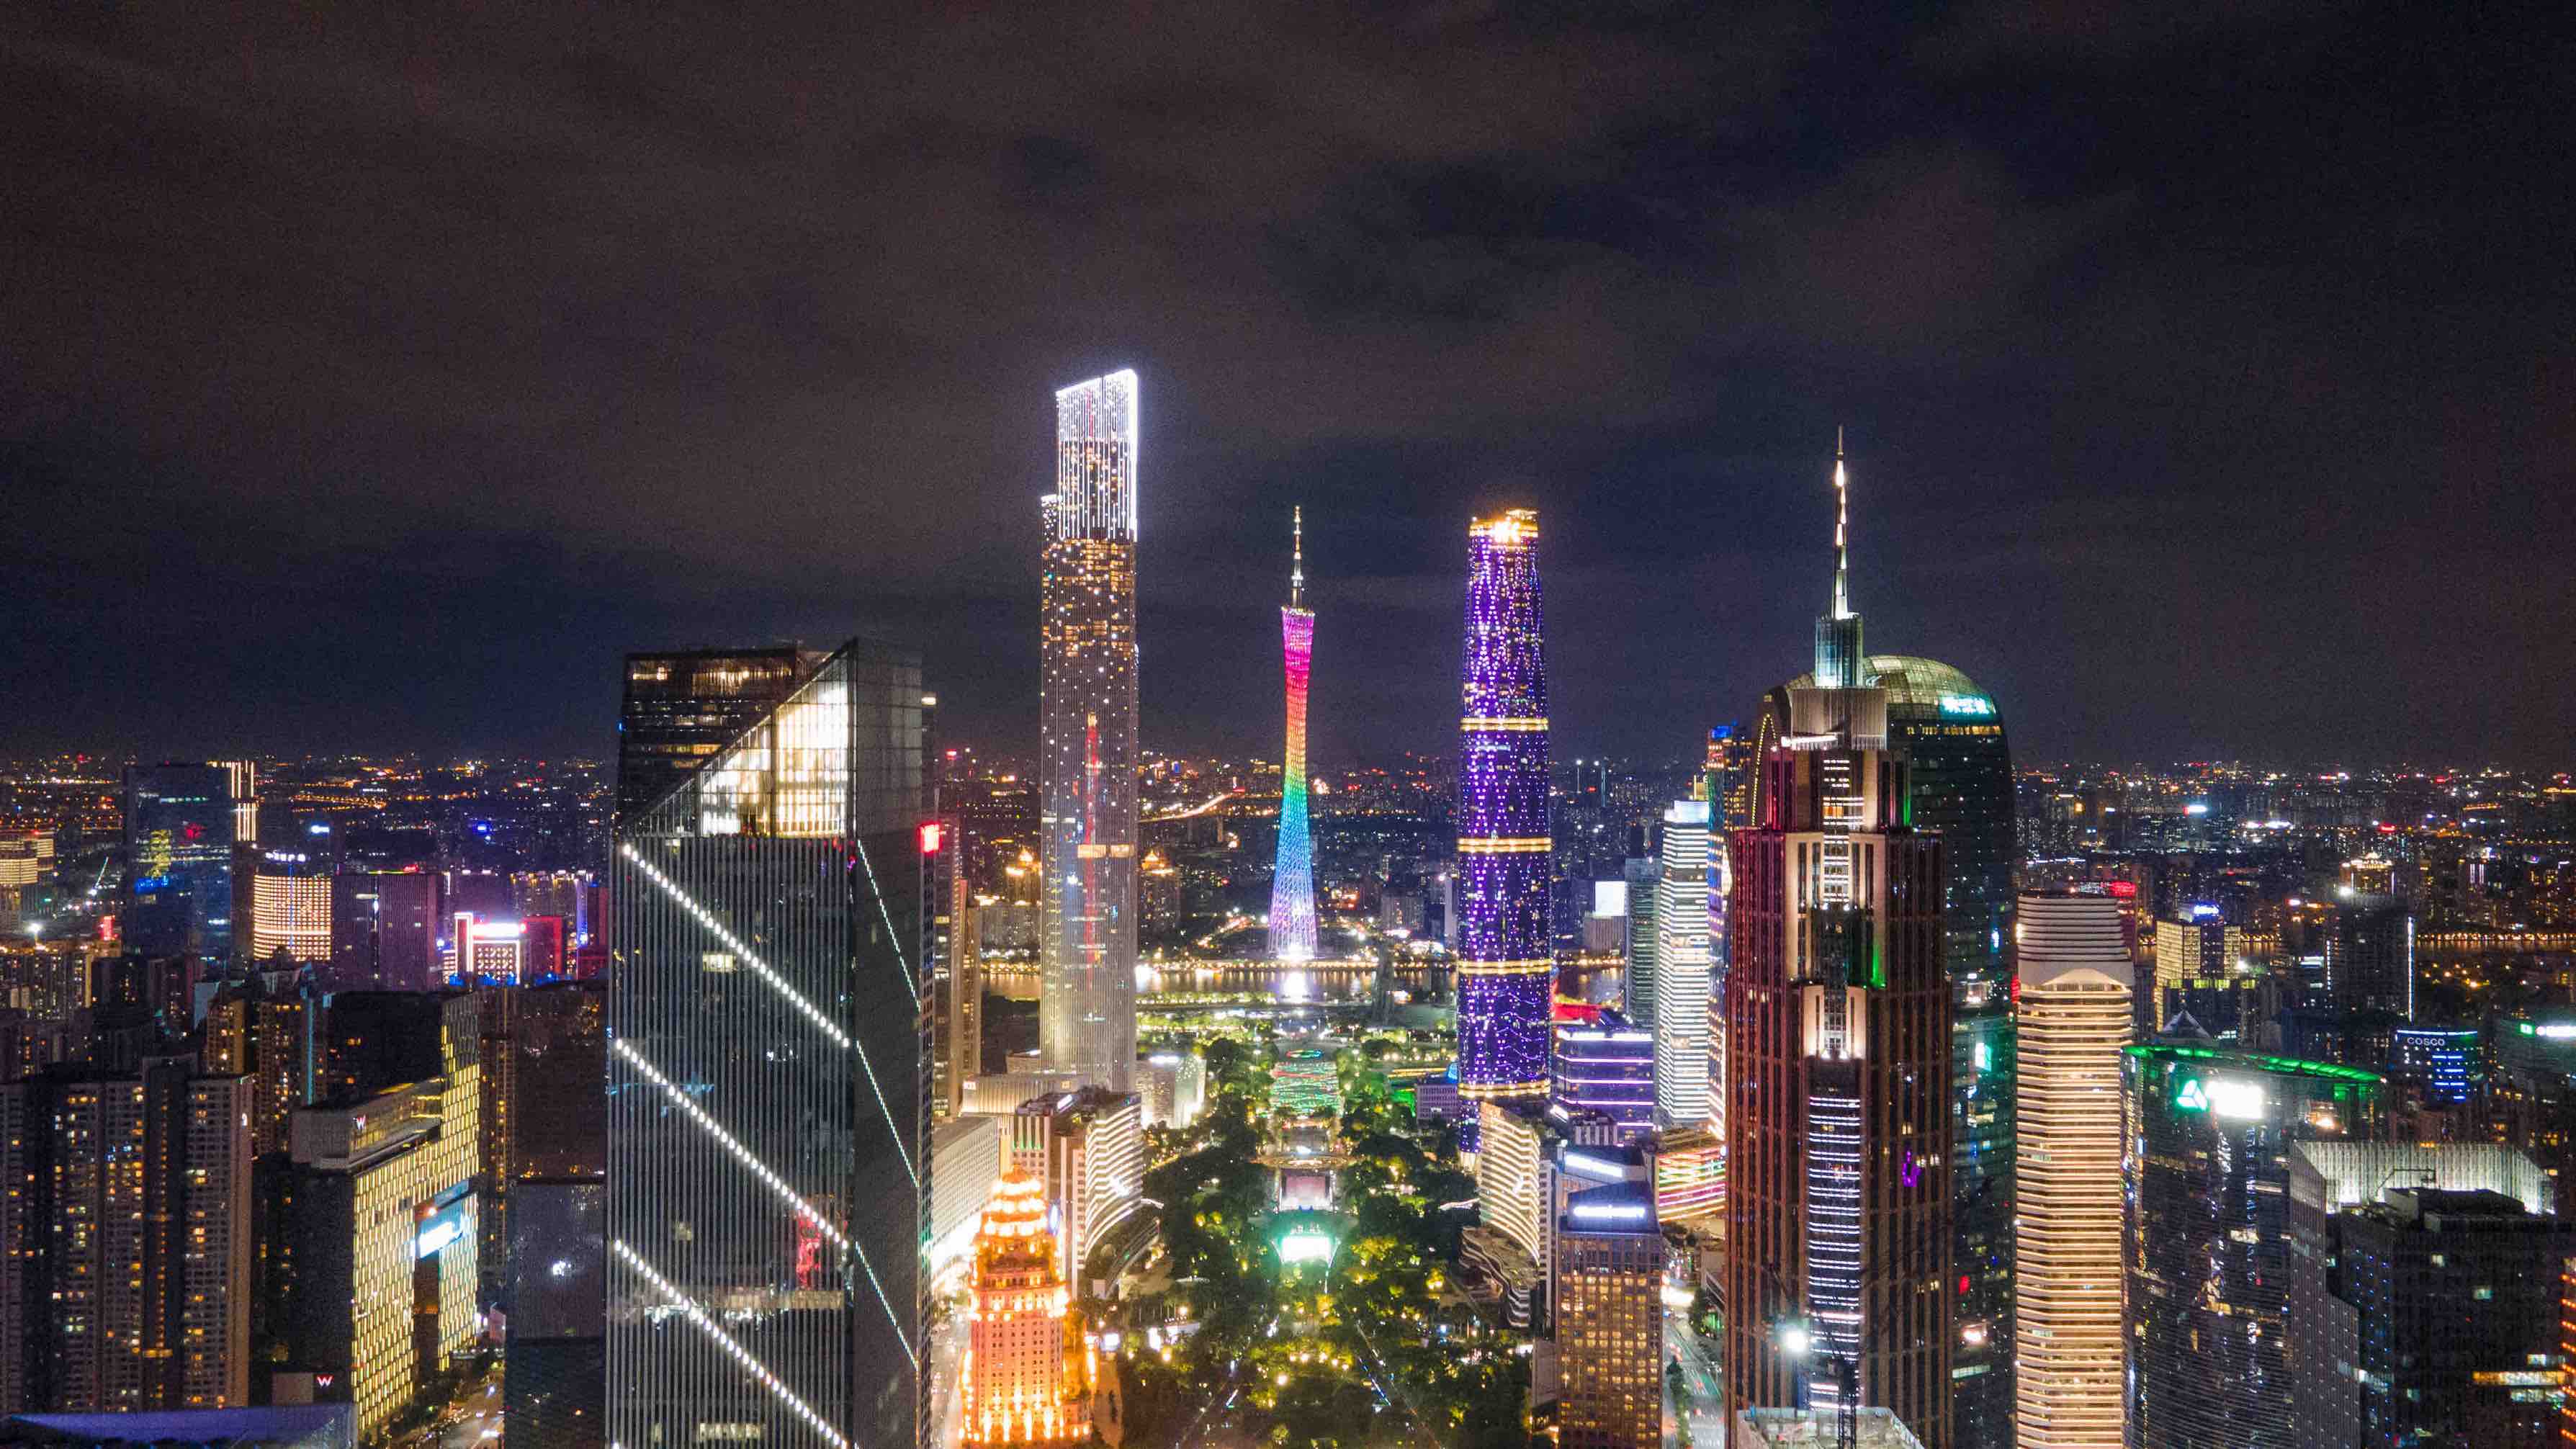 《2021世界旅游城市蓝皮书》发布,广州获评世界游客最向往的中国城市